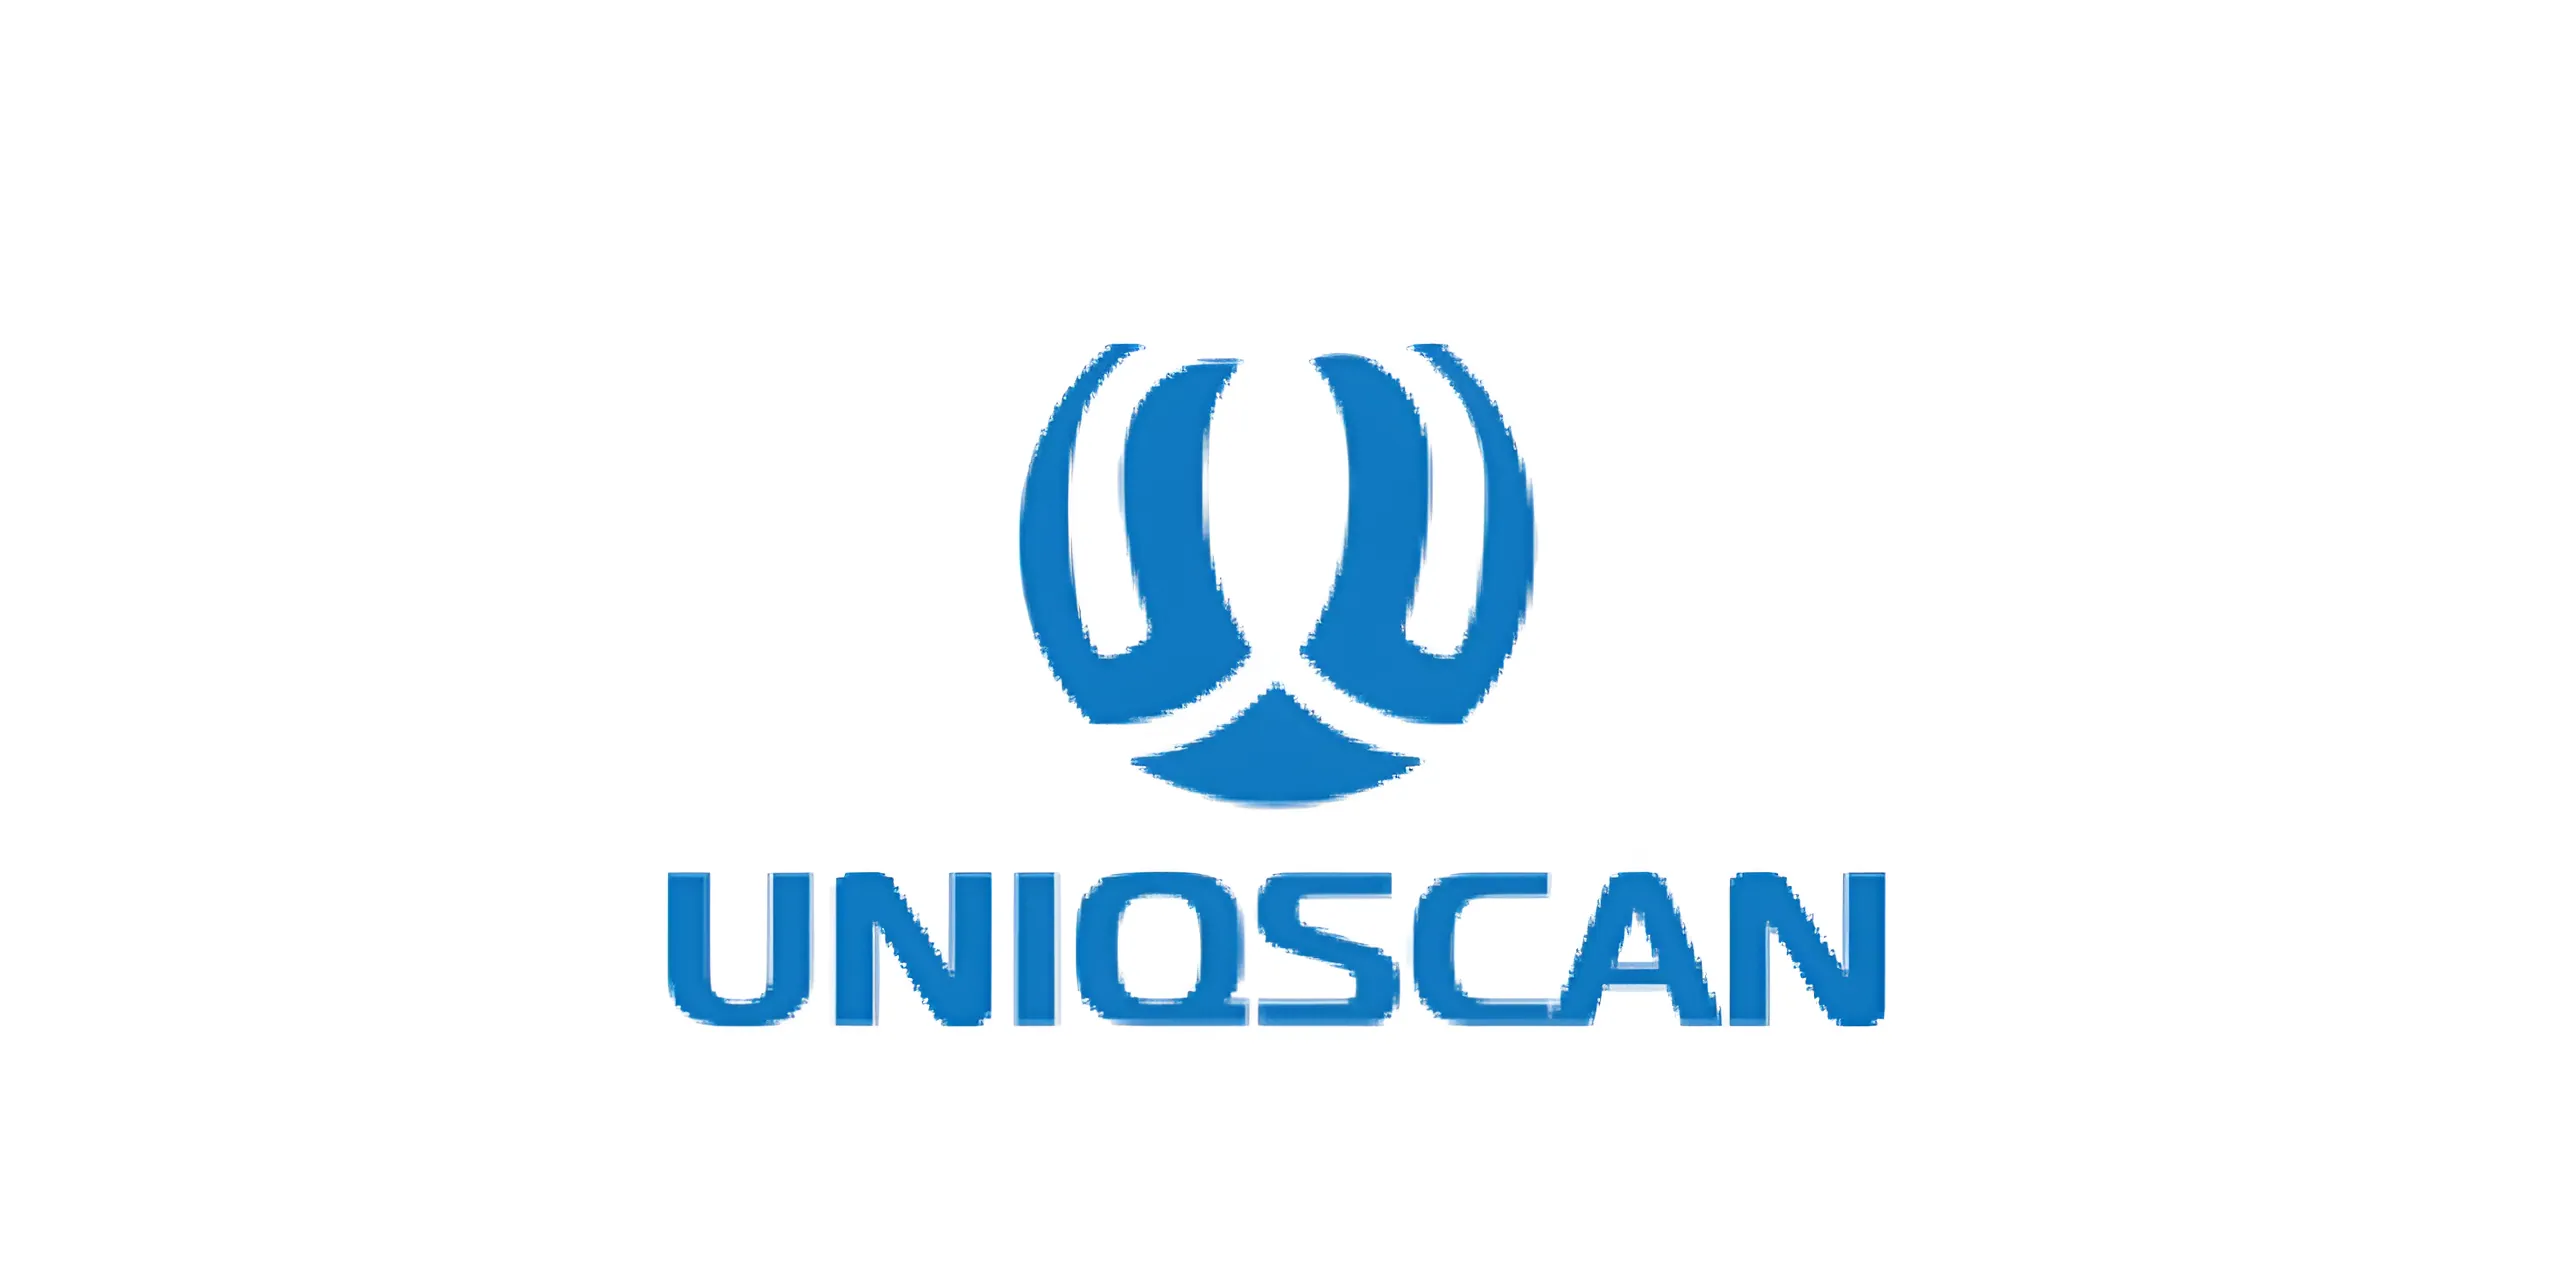 Uniqscan Company's LOGO